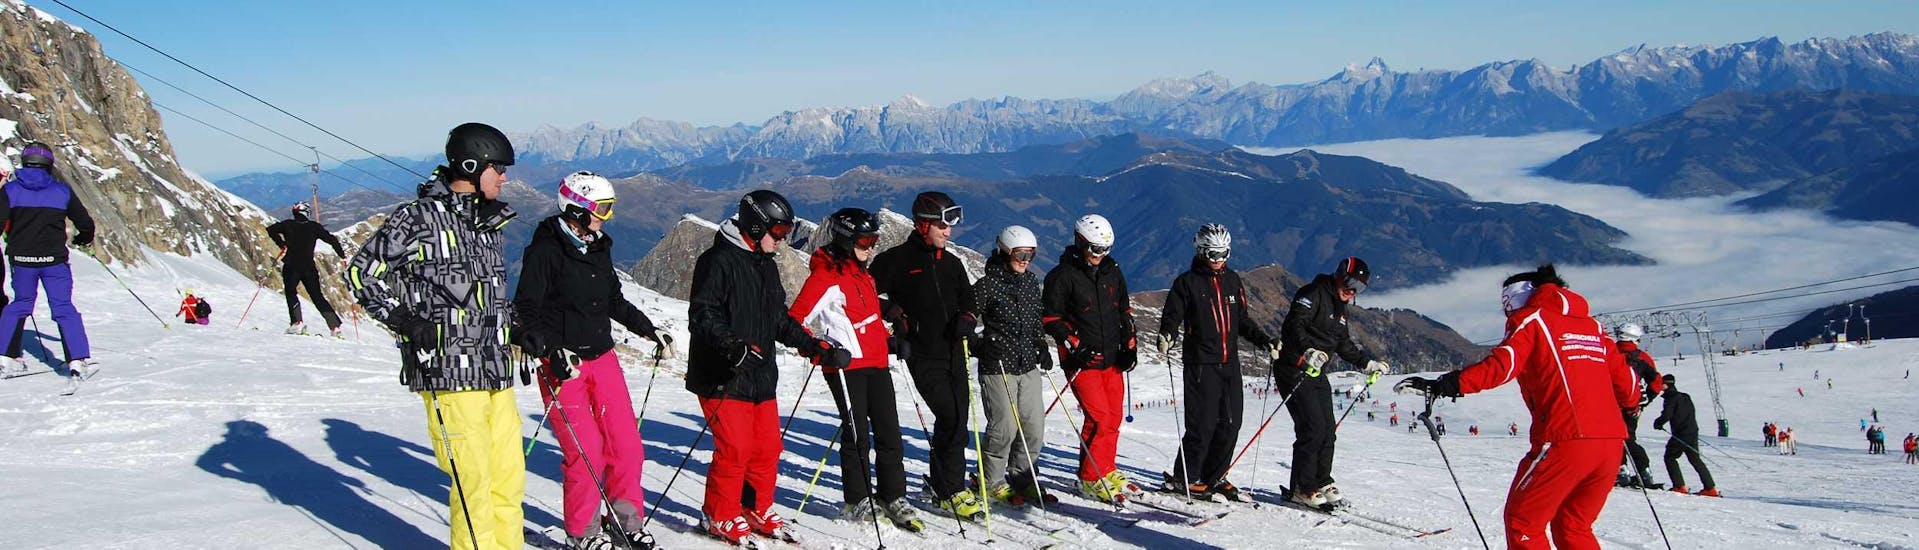 Een groep leert skiën tijdens de volwassen skilessen voor beginners bij Ski Dome Oberschneider in Kaprun.